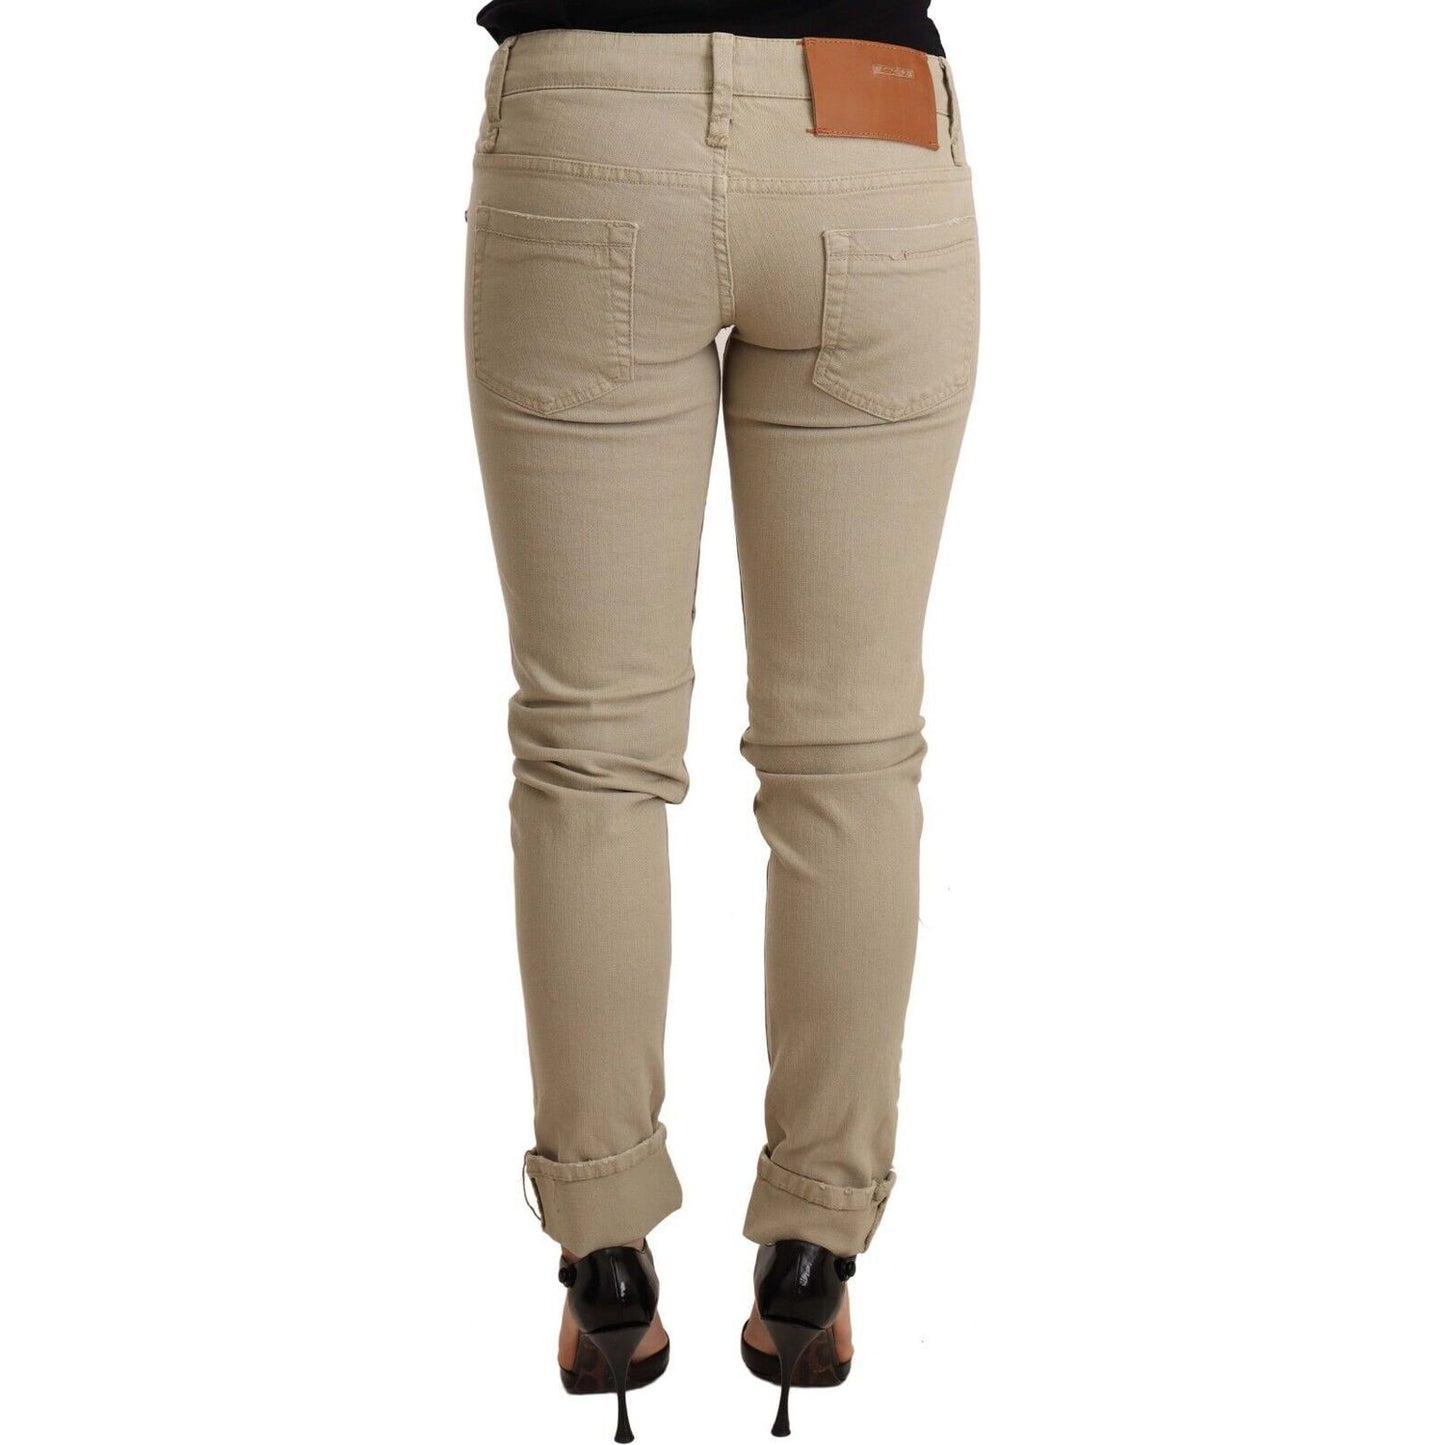 Acht Beige Cotton Slim Fit Chic Jeans Jeans & Pants beige-denim-cotton-bottom-slim-fit-folded-pant